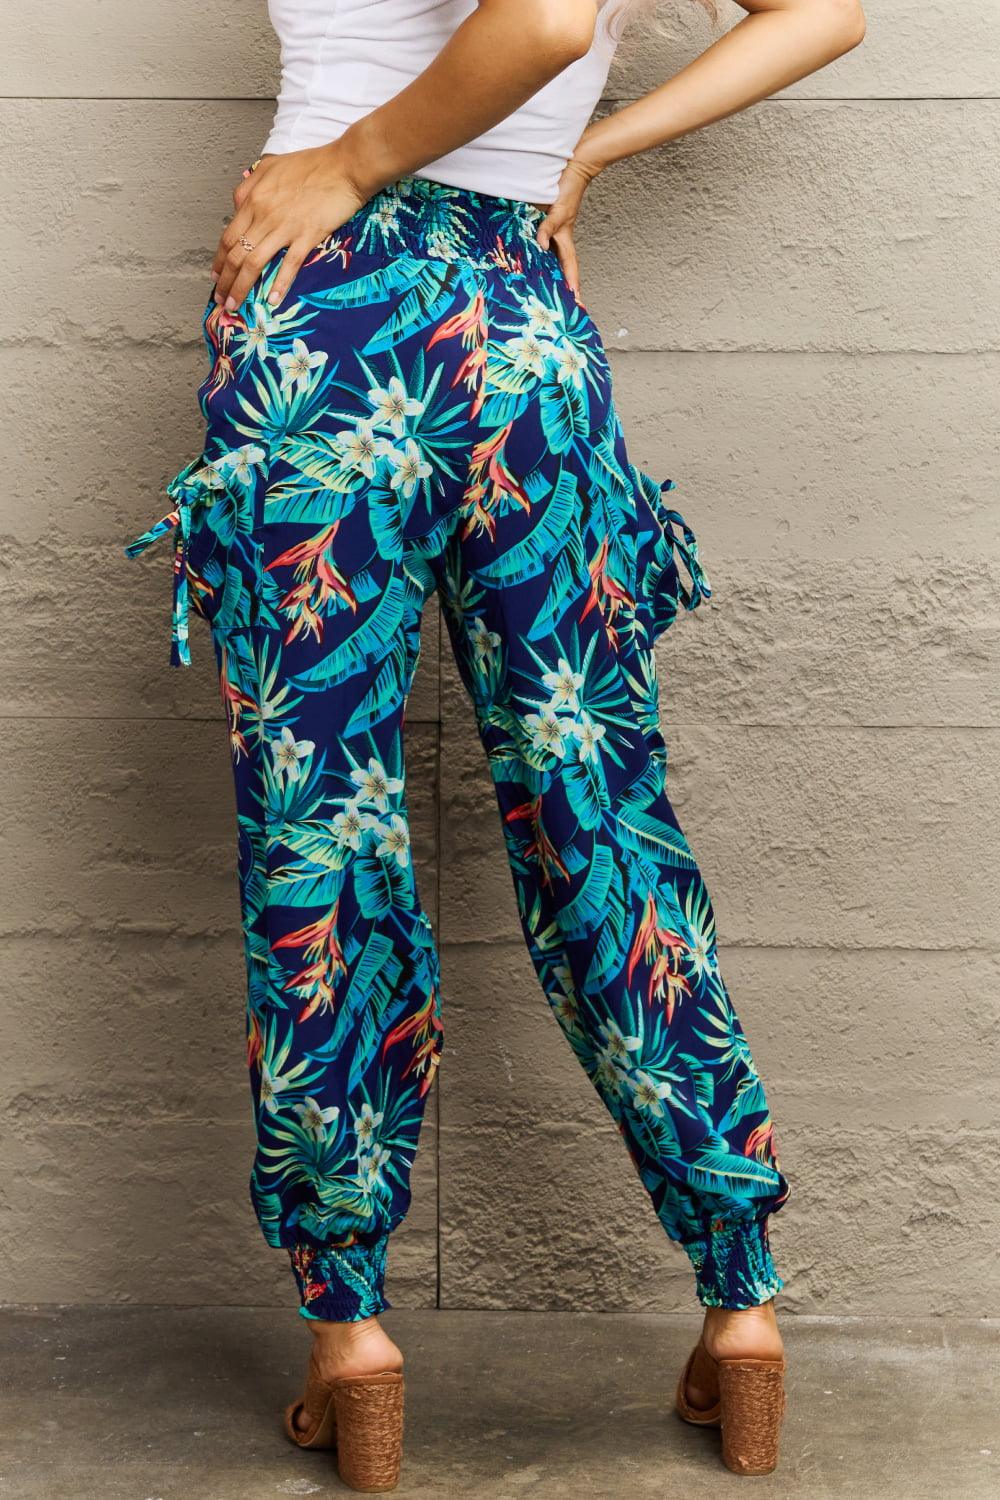 Smocked Plant Print Long Pants - Lab Fashion, Home & Health